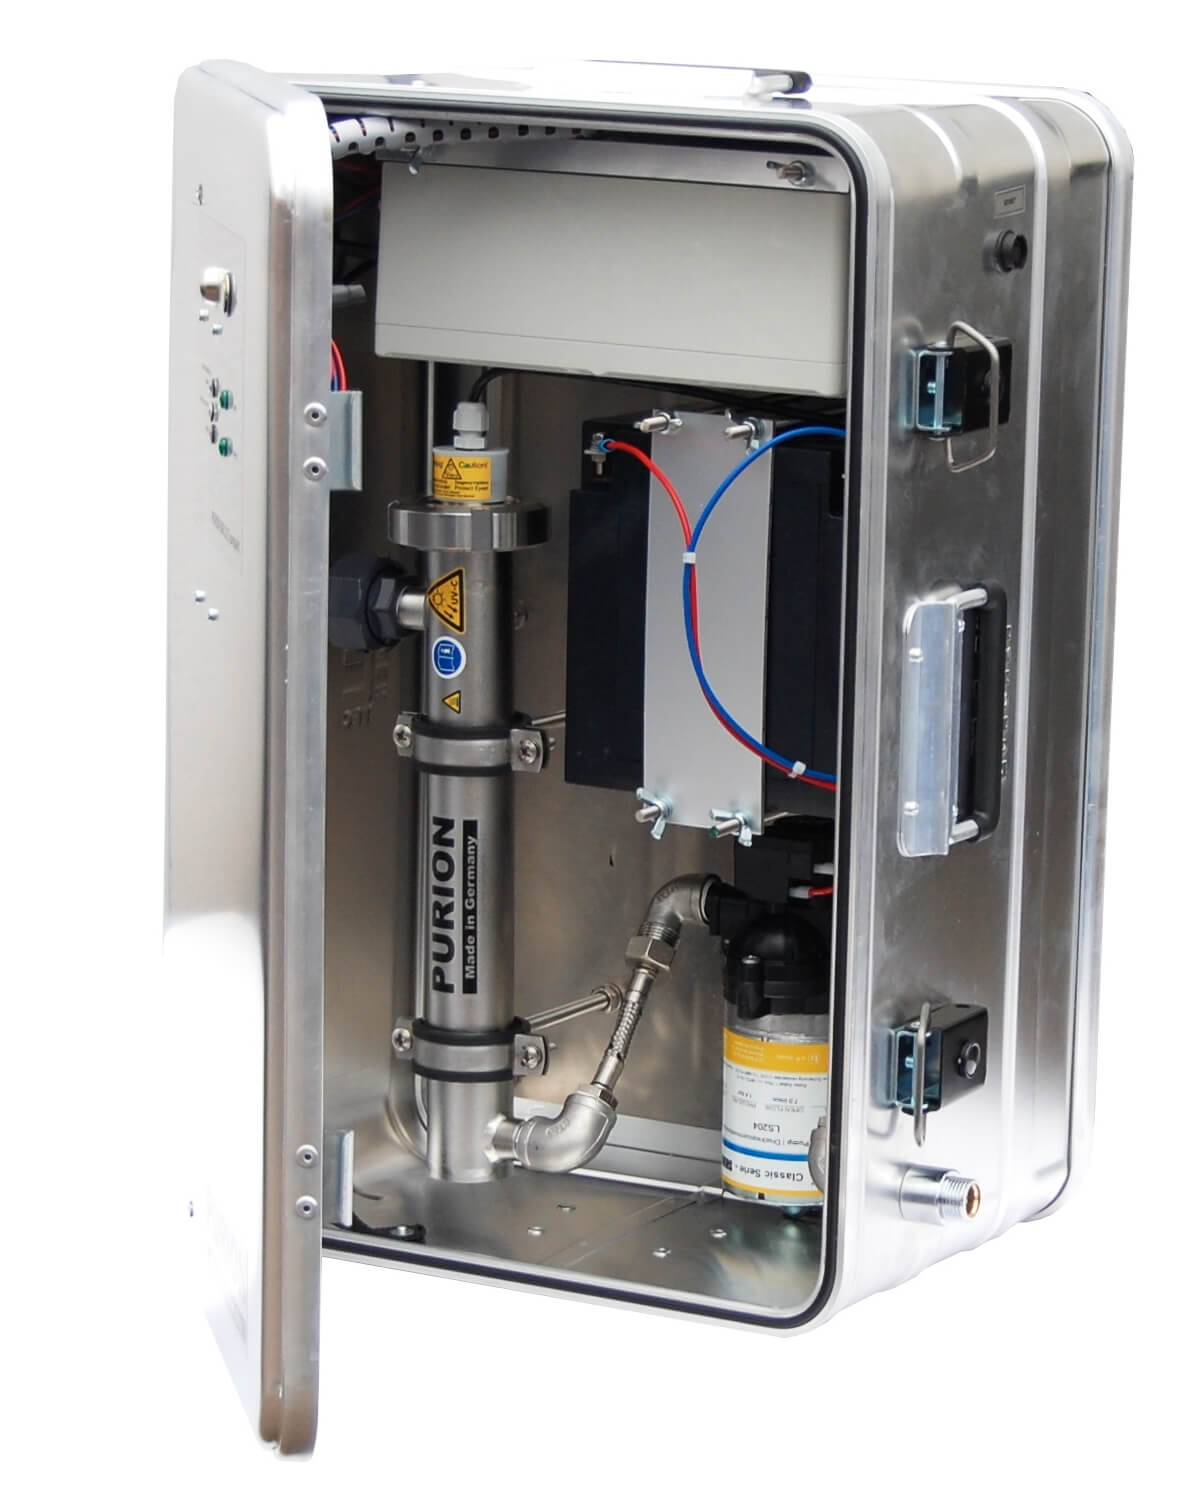 Eine PURION Tropenbox mit Edelstahlgehäuse, Wasserfiltersystem und UV-C-Desinfektionsanlage im Inneren, hergestellt von der PURION GmbH.